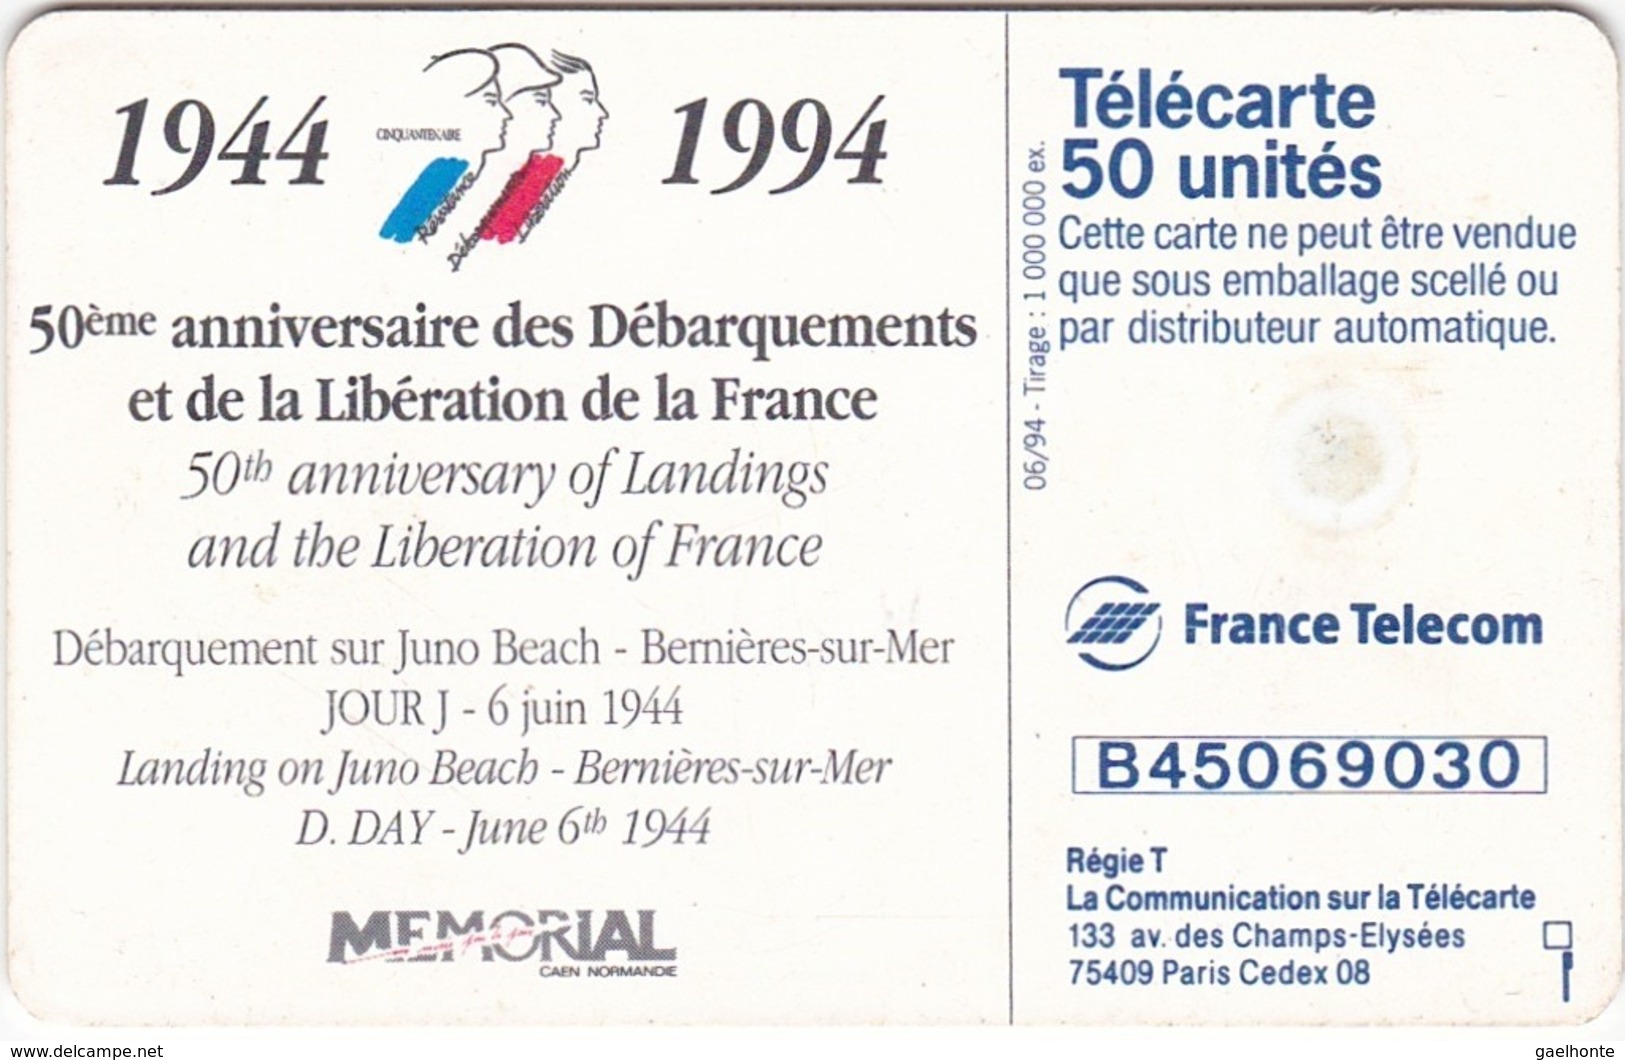 TC120 TÉLÉCARTE 50 UNITÉS - 1944-1994 - 50ème ANNIVERSAIRE DES DEBARQUEMENTS... - BERNIERES SUR MER 06 JUIN 1944 - Leger